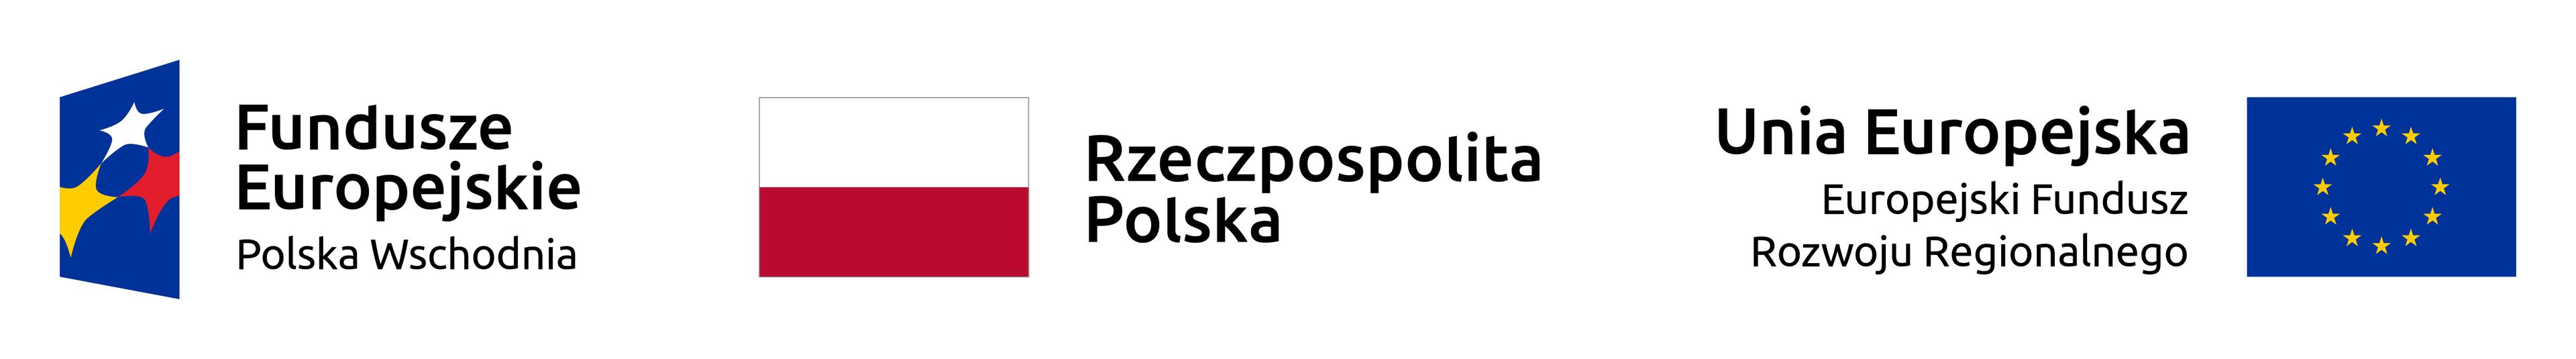 Fundusze europejskie — Polska wschodnia